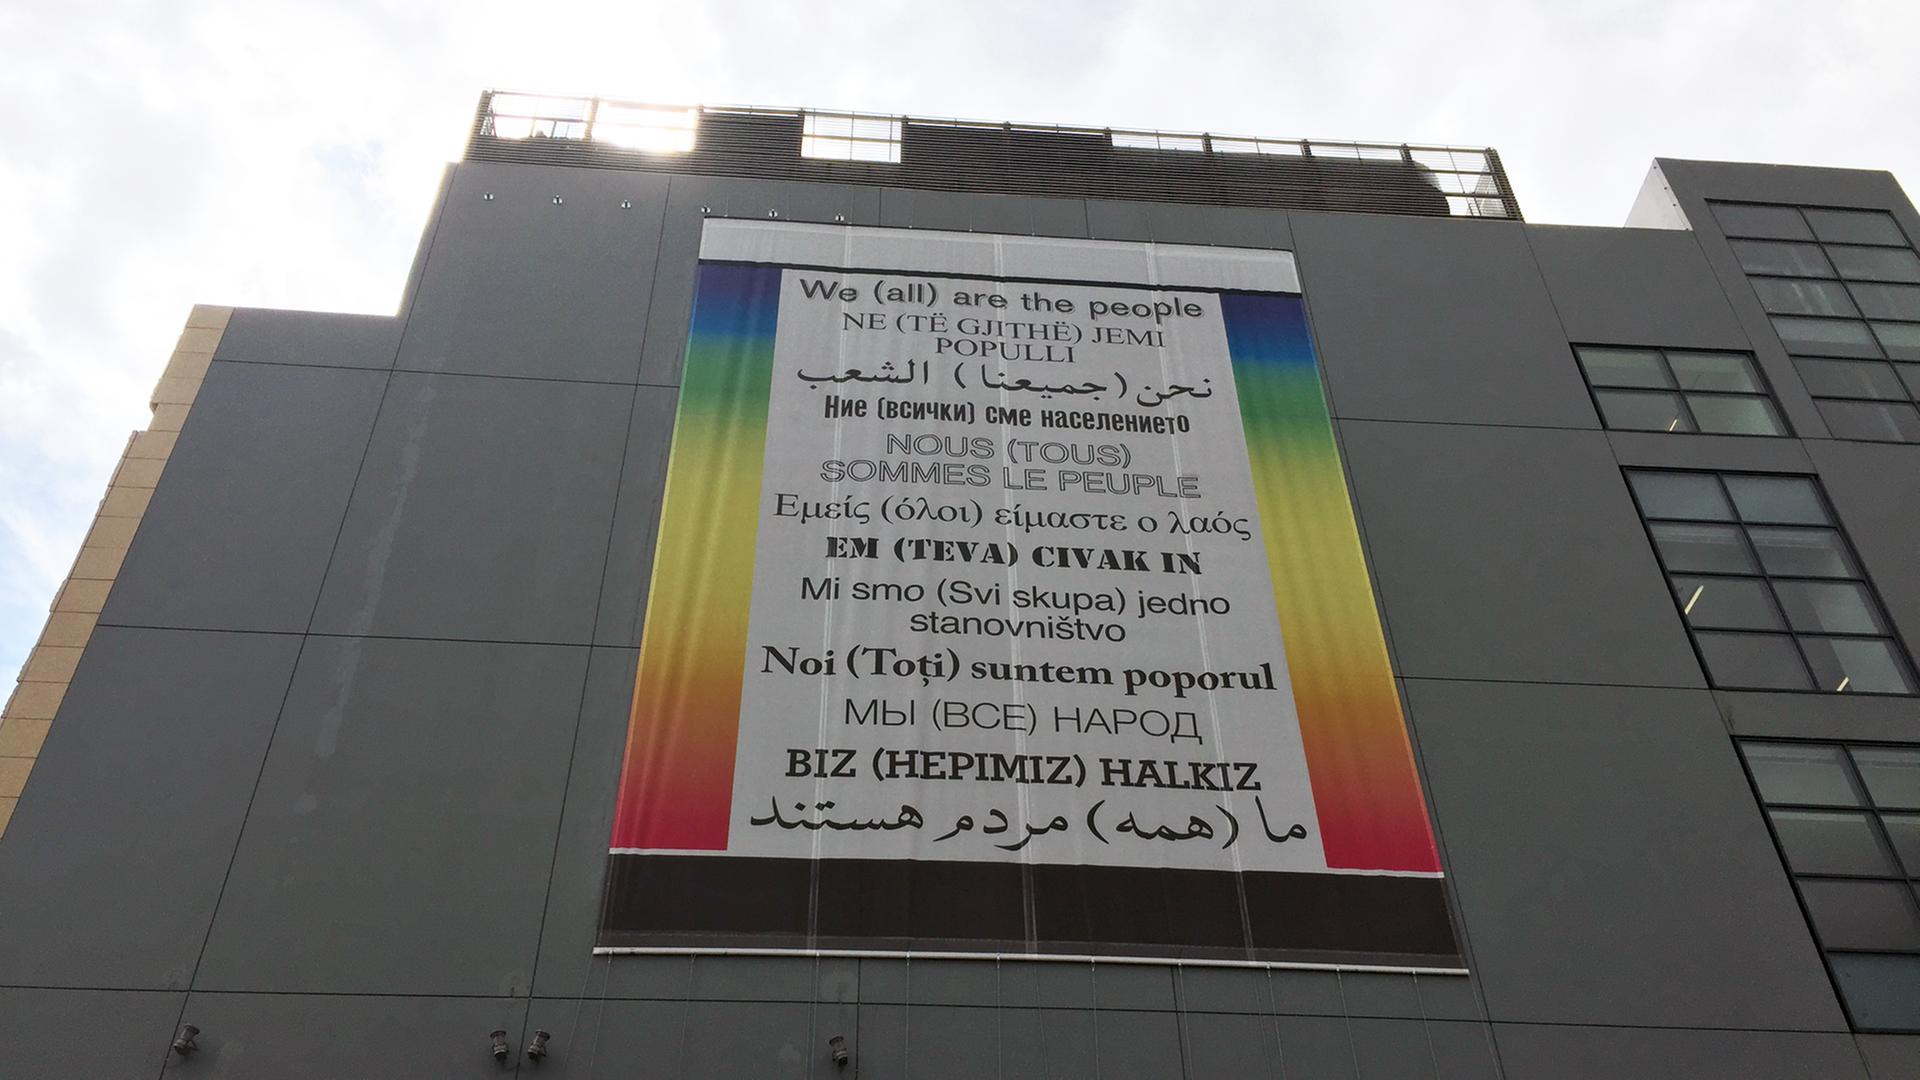 Plakat auf der Fassade des Museums für zeitgenössische Kunst (EMST) in Athen mit dem Satz "We (all) are the people" in unterschiedlichen Sprachen